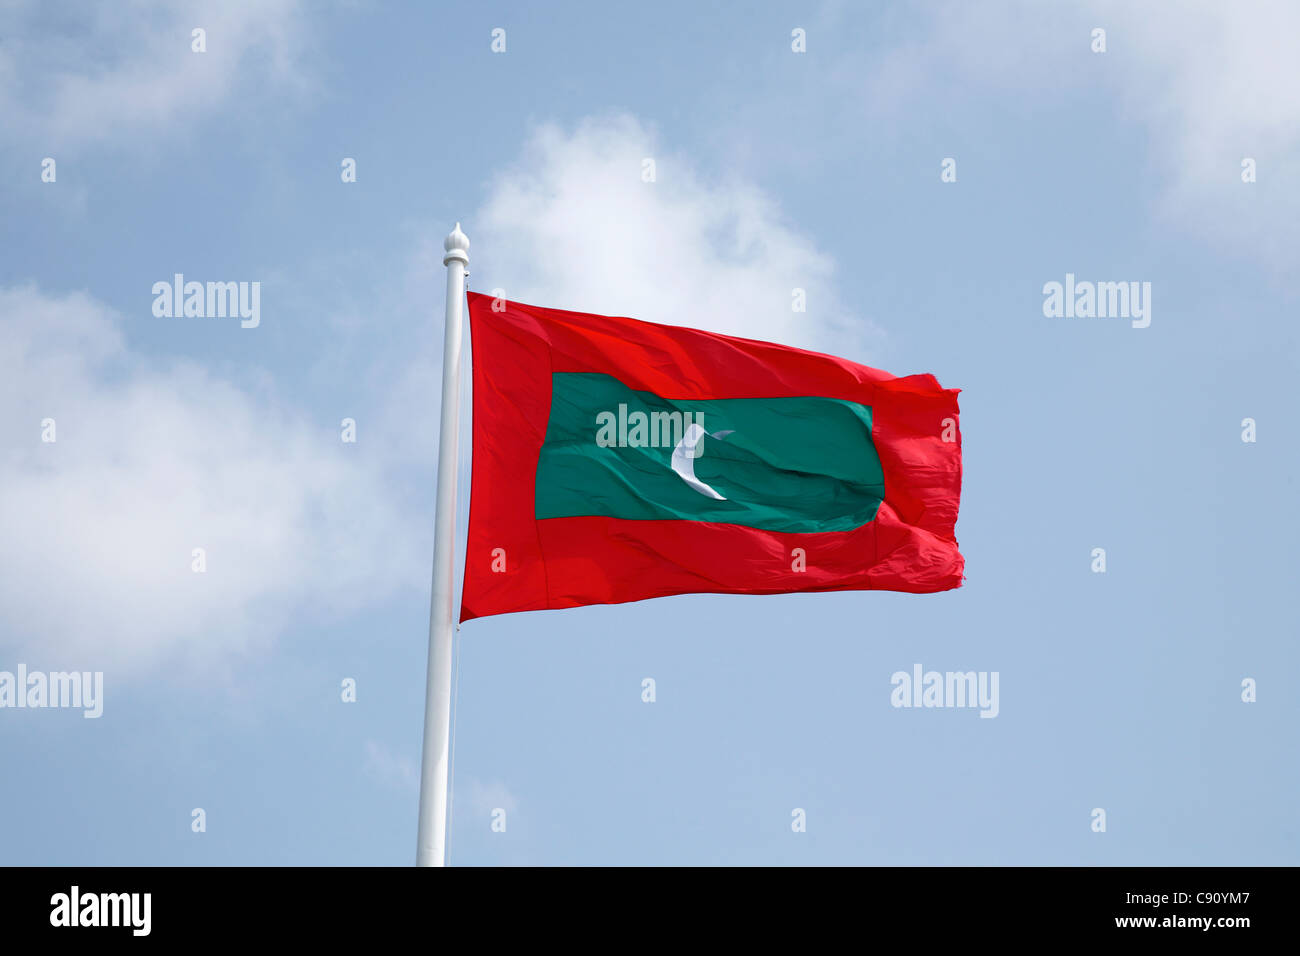 Le drapeau de la République des Maldives est rouge avec un grand rectangle vert dans le centre vertical portant un croissant blanc.Le Banque D'Images